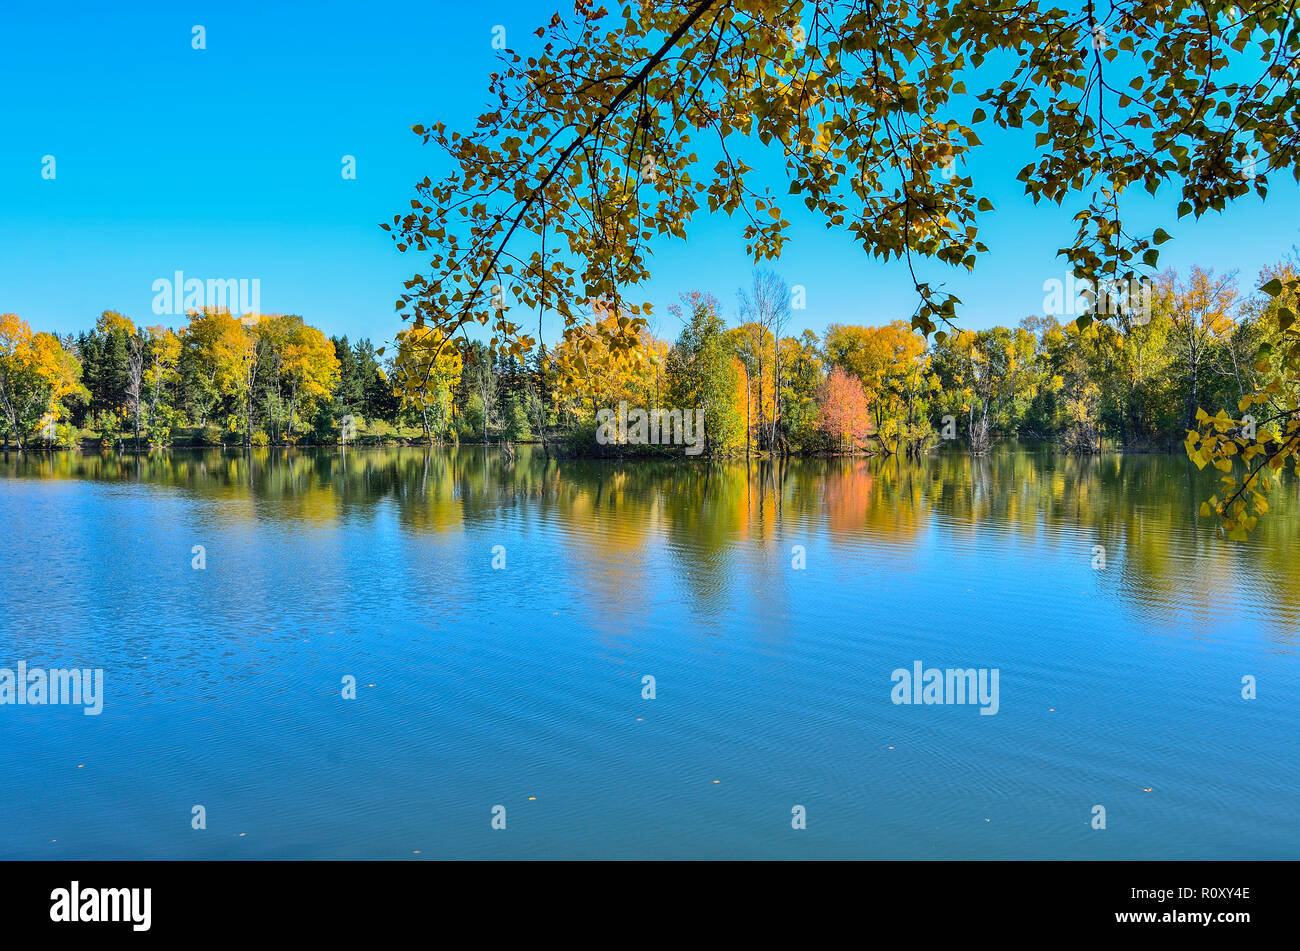 Septembre ensoleillé chaud paysage sur la rive du lac. Ciel bleu et feuillage doré d'arbres se reflétant dans la surface de l'eau - beauté de l'automne nature Banque D'Images